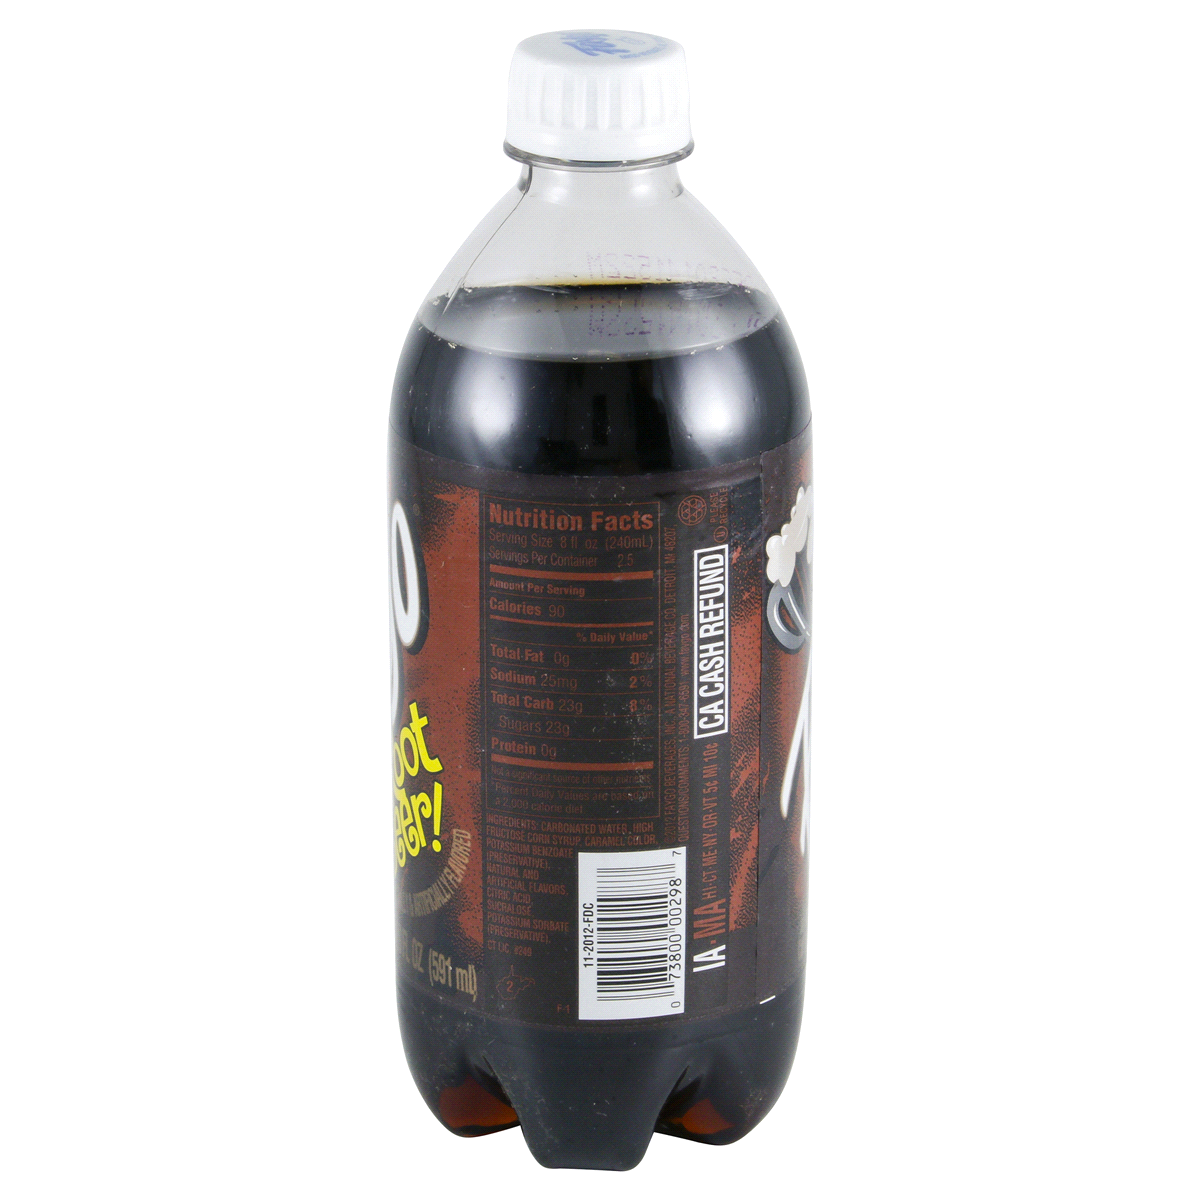 slide 3 of 4, Faygo Draft Style Root Beer Bottle, 20 fl oz